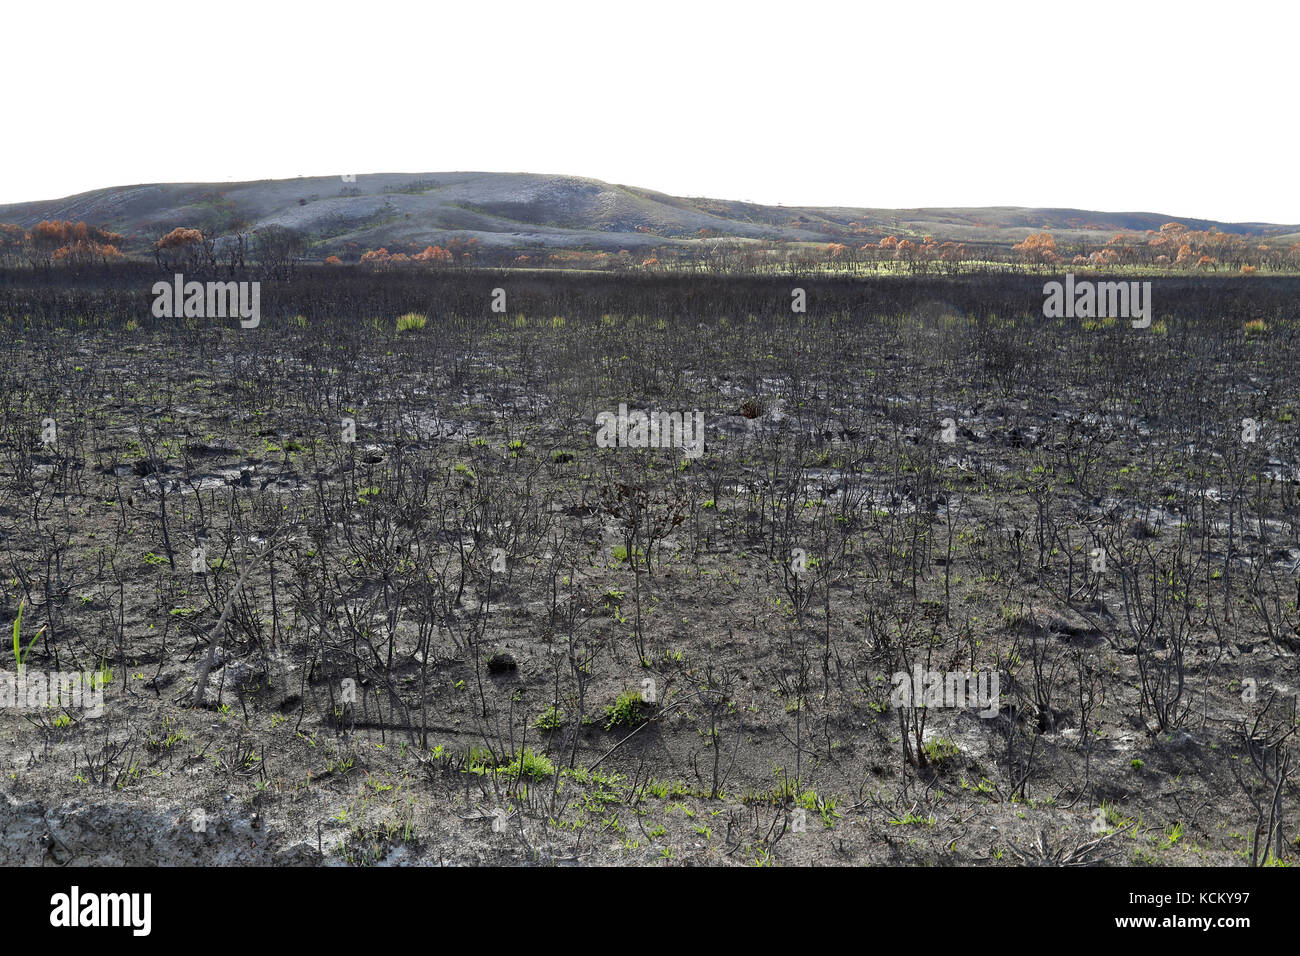 Étendue brûlée des landes côtières après les feux de brousse catastrophiques. Temma, zone de conservation Arthur Pieman, région de Tarkine, nord-ouest de la Tasmanie Banque D'Images